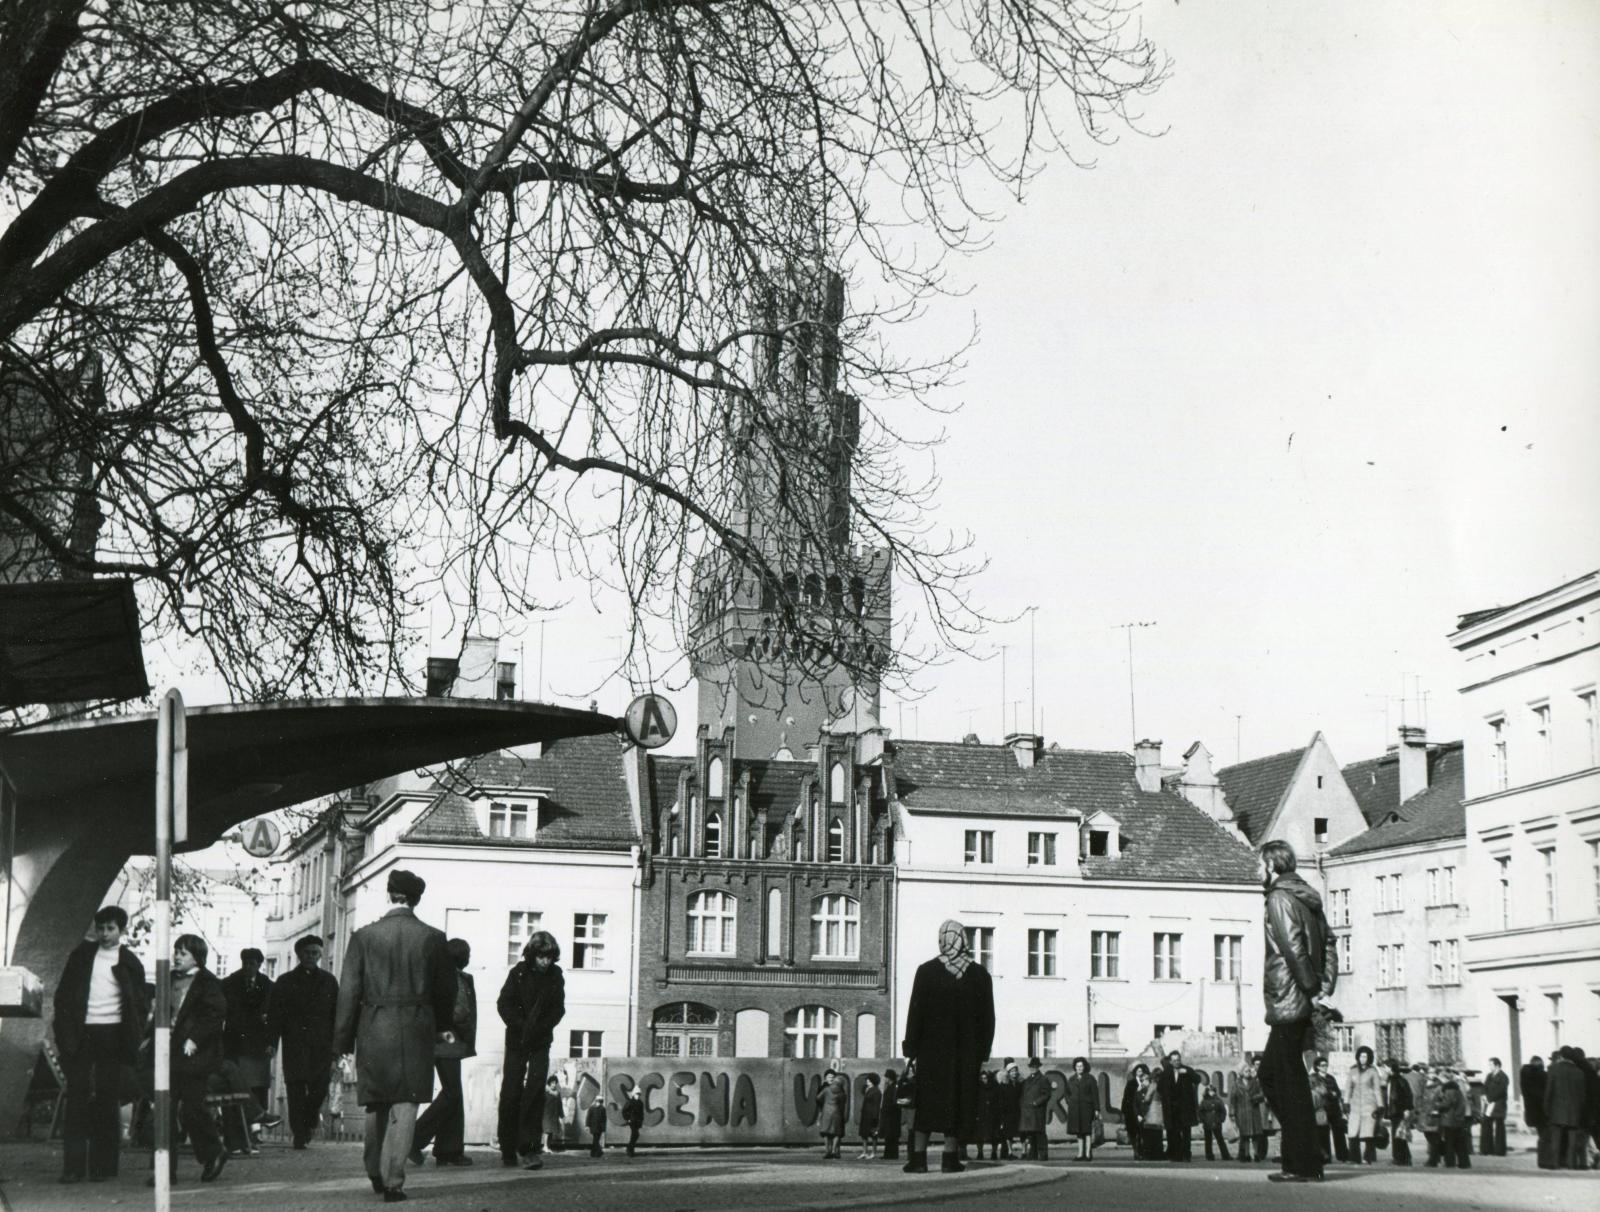 Po lewej charakterystyczna wiata przy postoju taksówek według projektu Floriana Jesionowskiego, fot. R. Kwaśniewski, lata 70. XX wieku. 